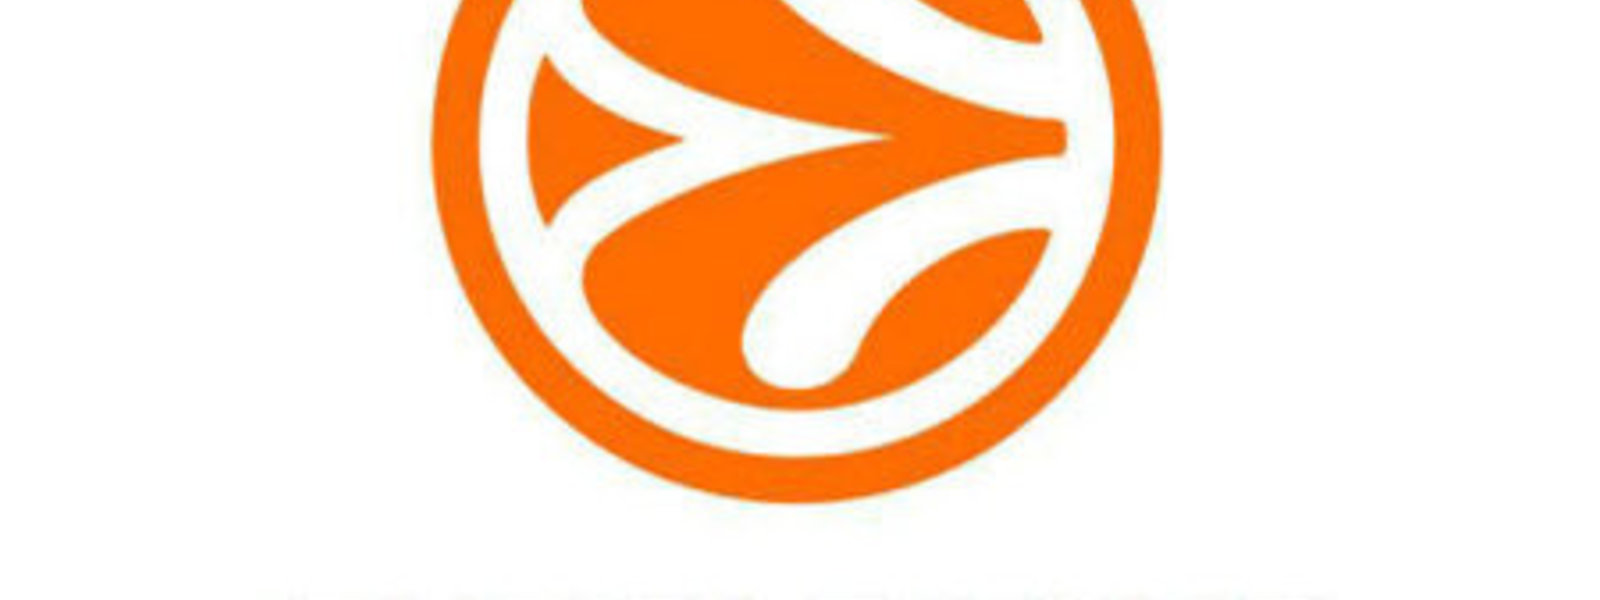 Very big euroleague logo